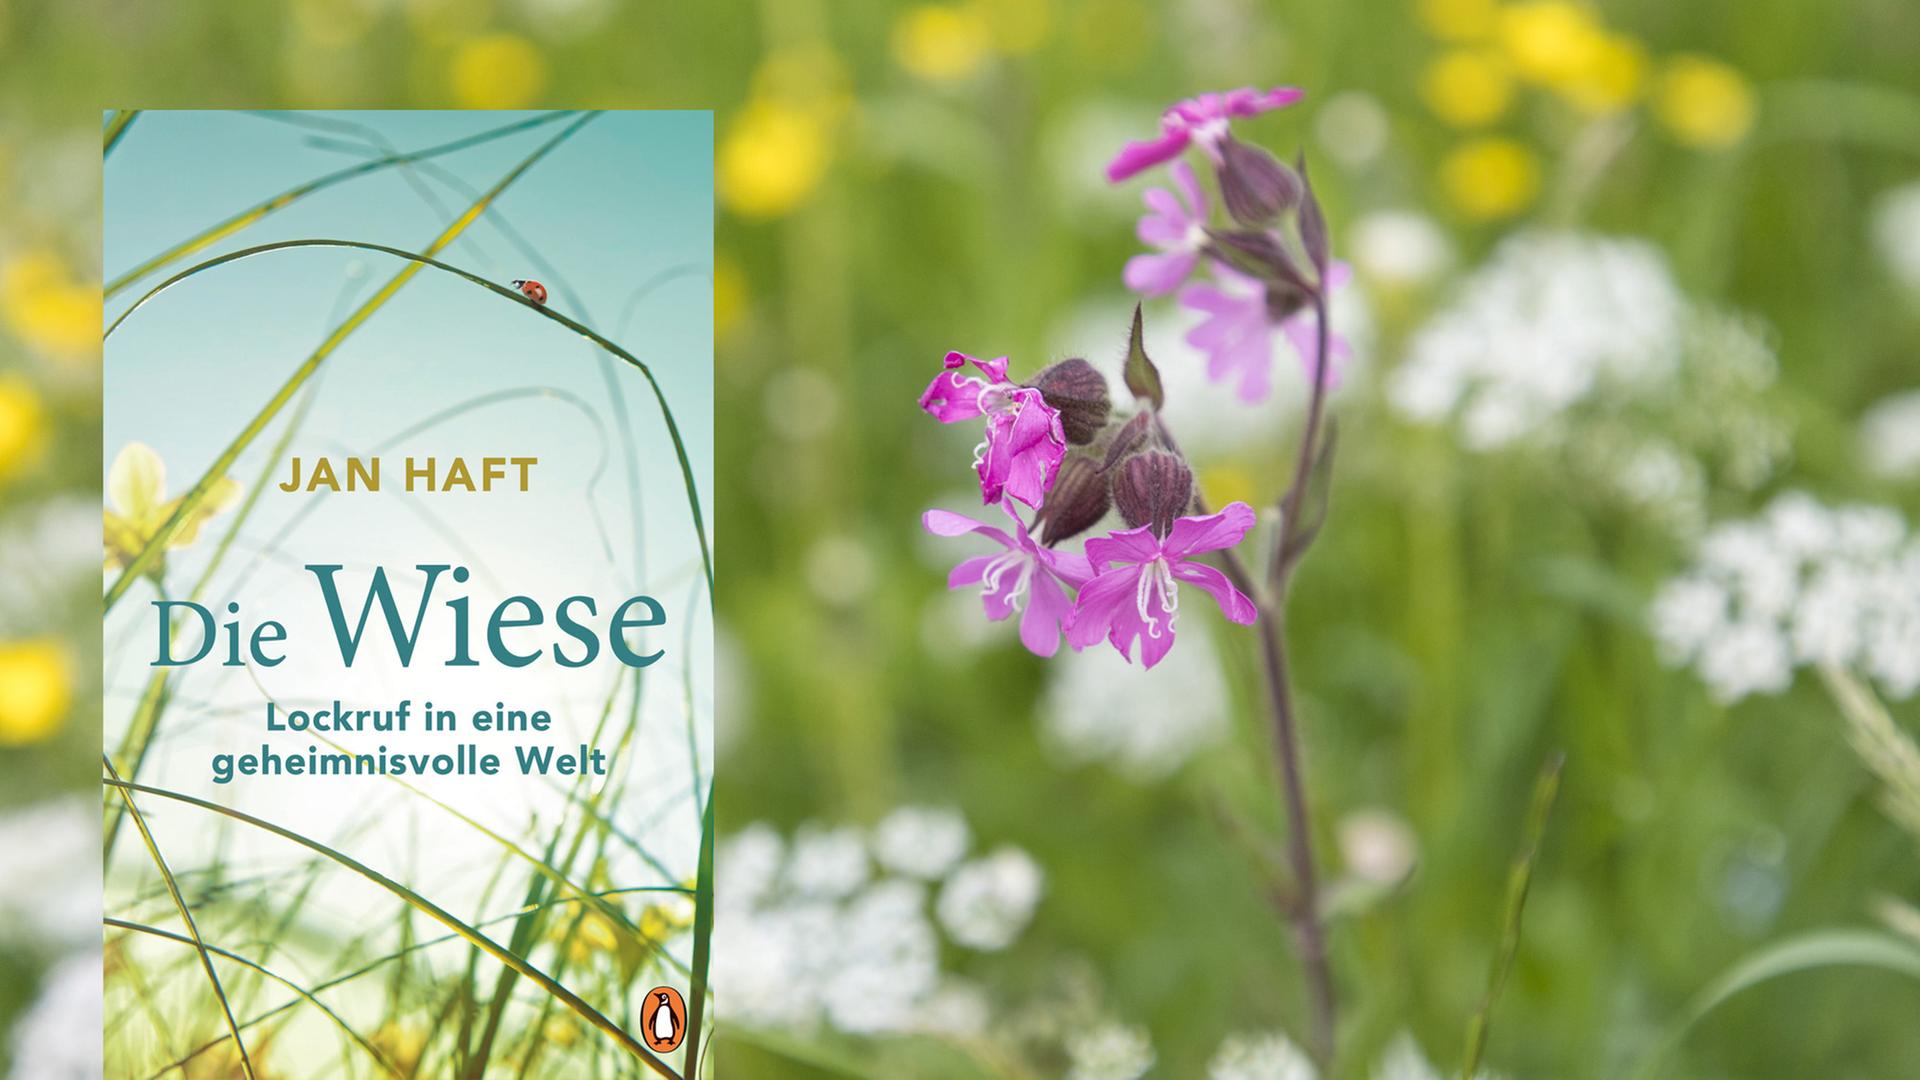 Cover von Jan Haft: Die Wiese, im Hintergrund ist eine Blumenwiese zu sehen